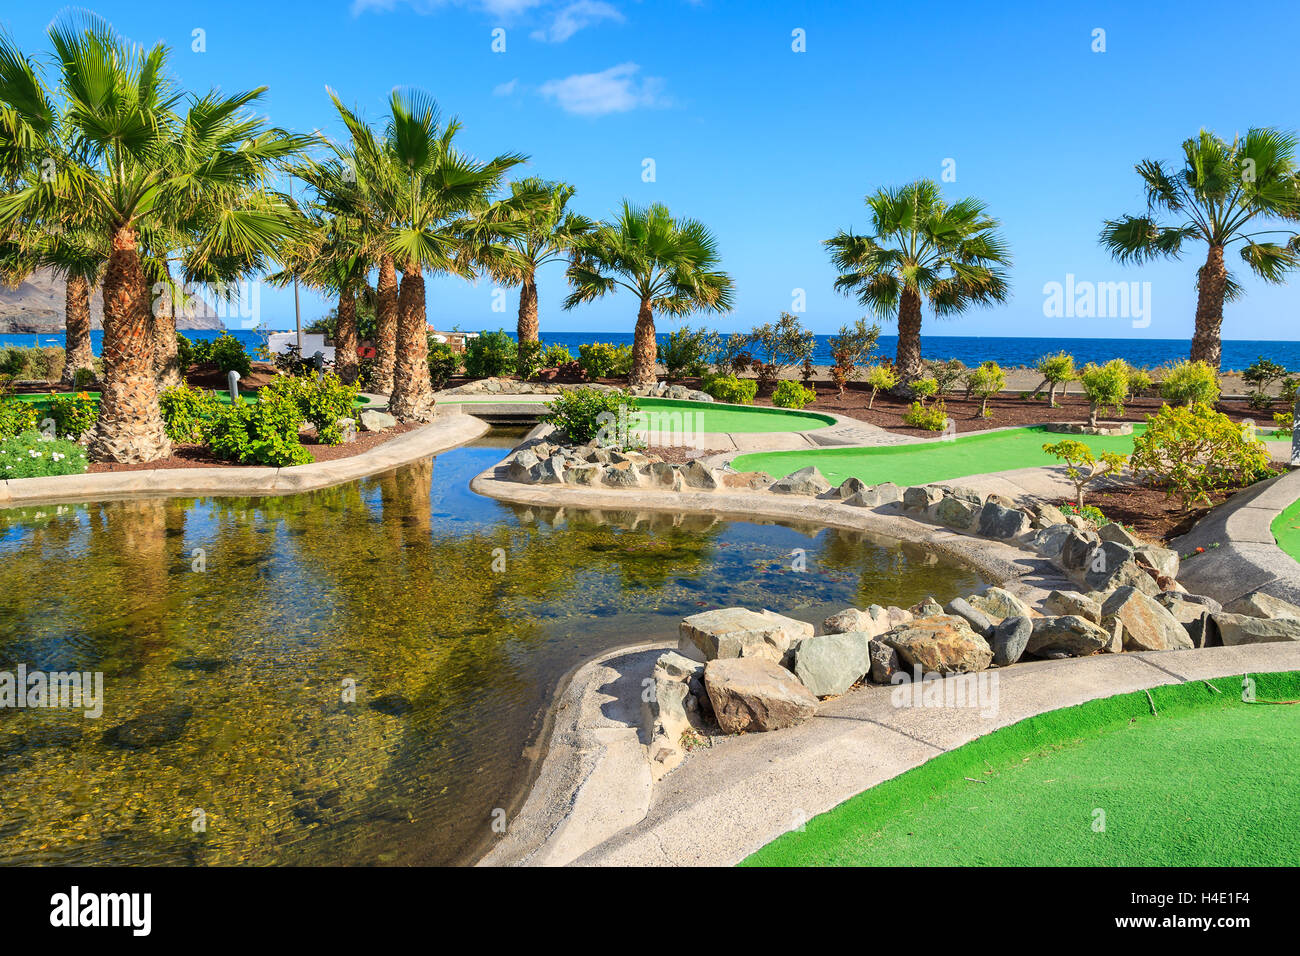 LAS Playitas, Fuerteventura - Feb 7, 2014: hermosos jardines del hotel en la costa de la isla de Fuerteventura. Las Islas Canarias son populares Foto de stock